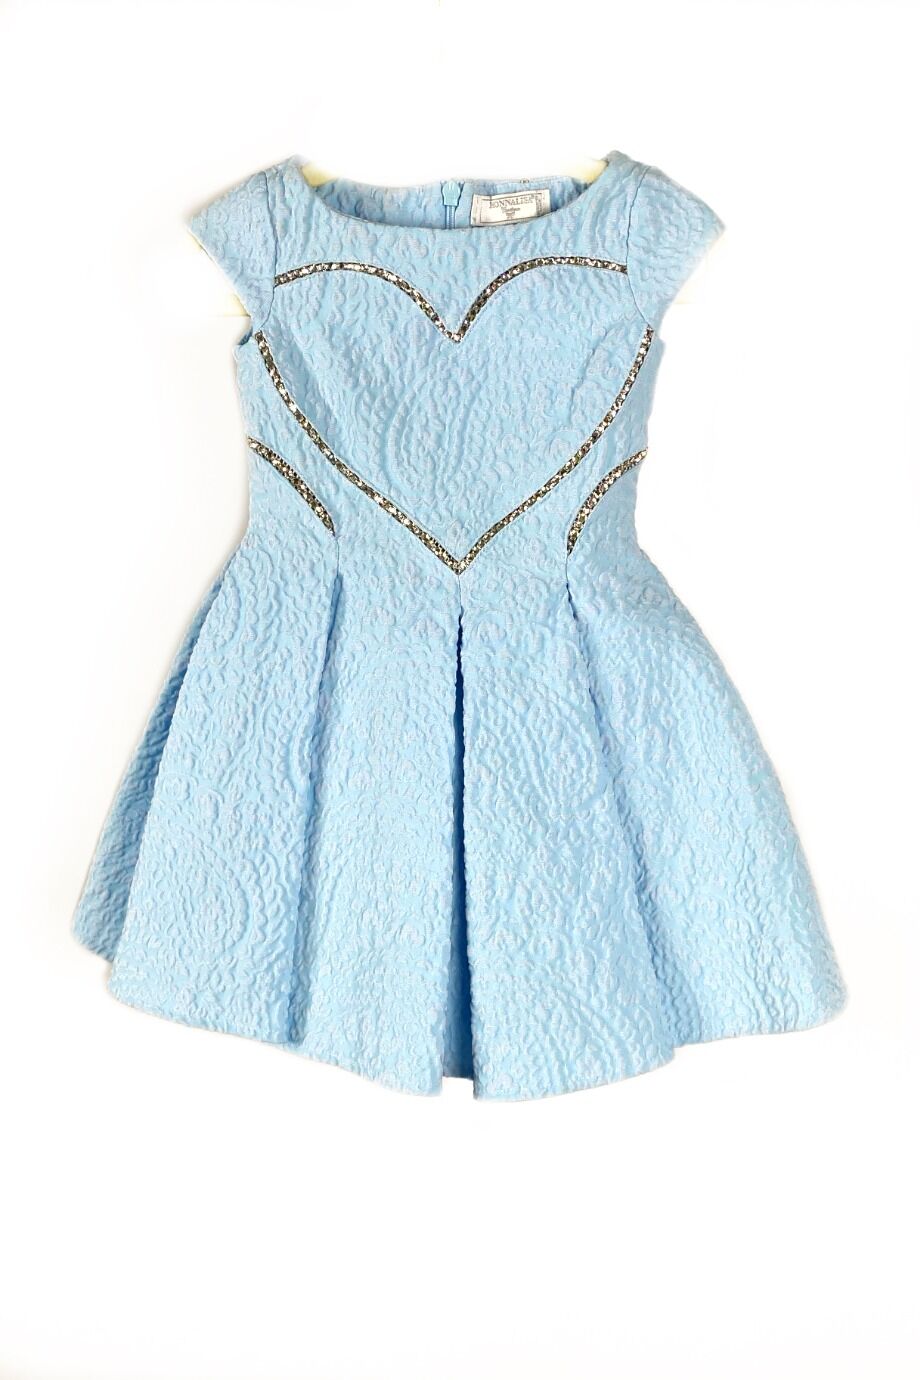 image 1 Деткое платье голубого цвета с сердцем из страз